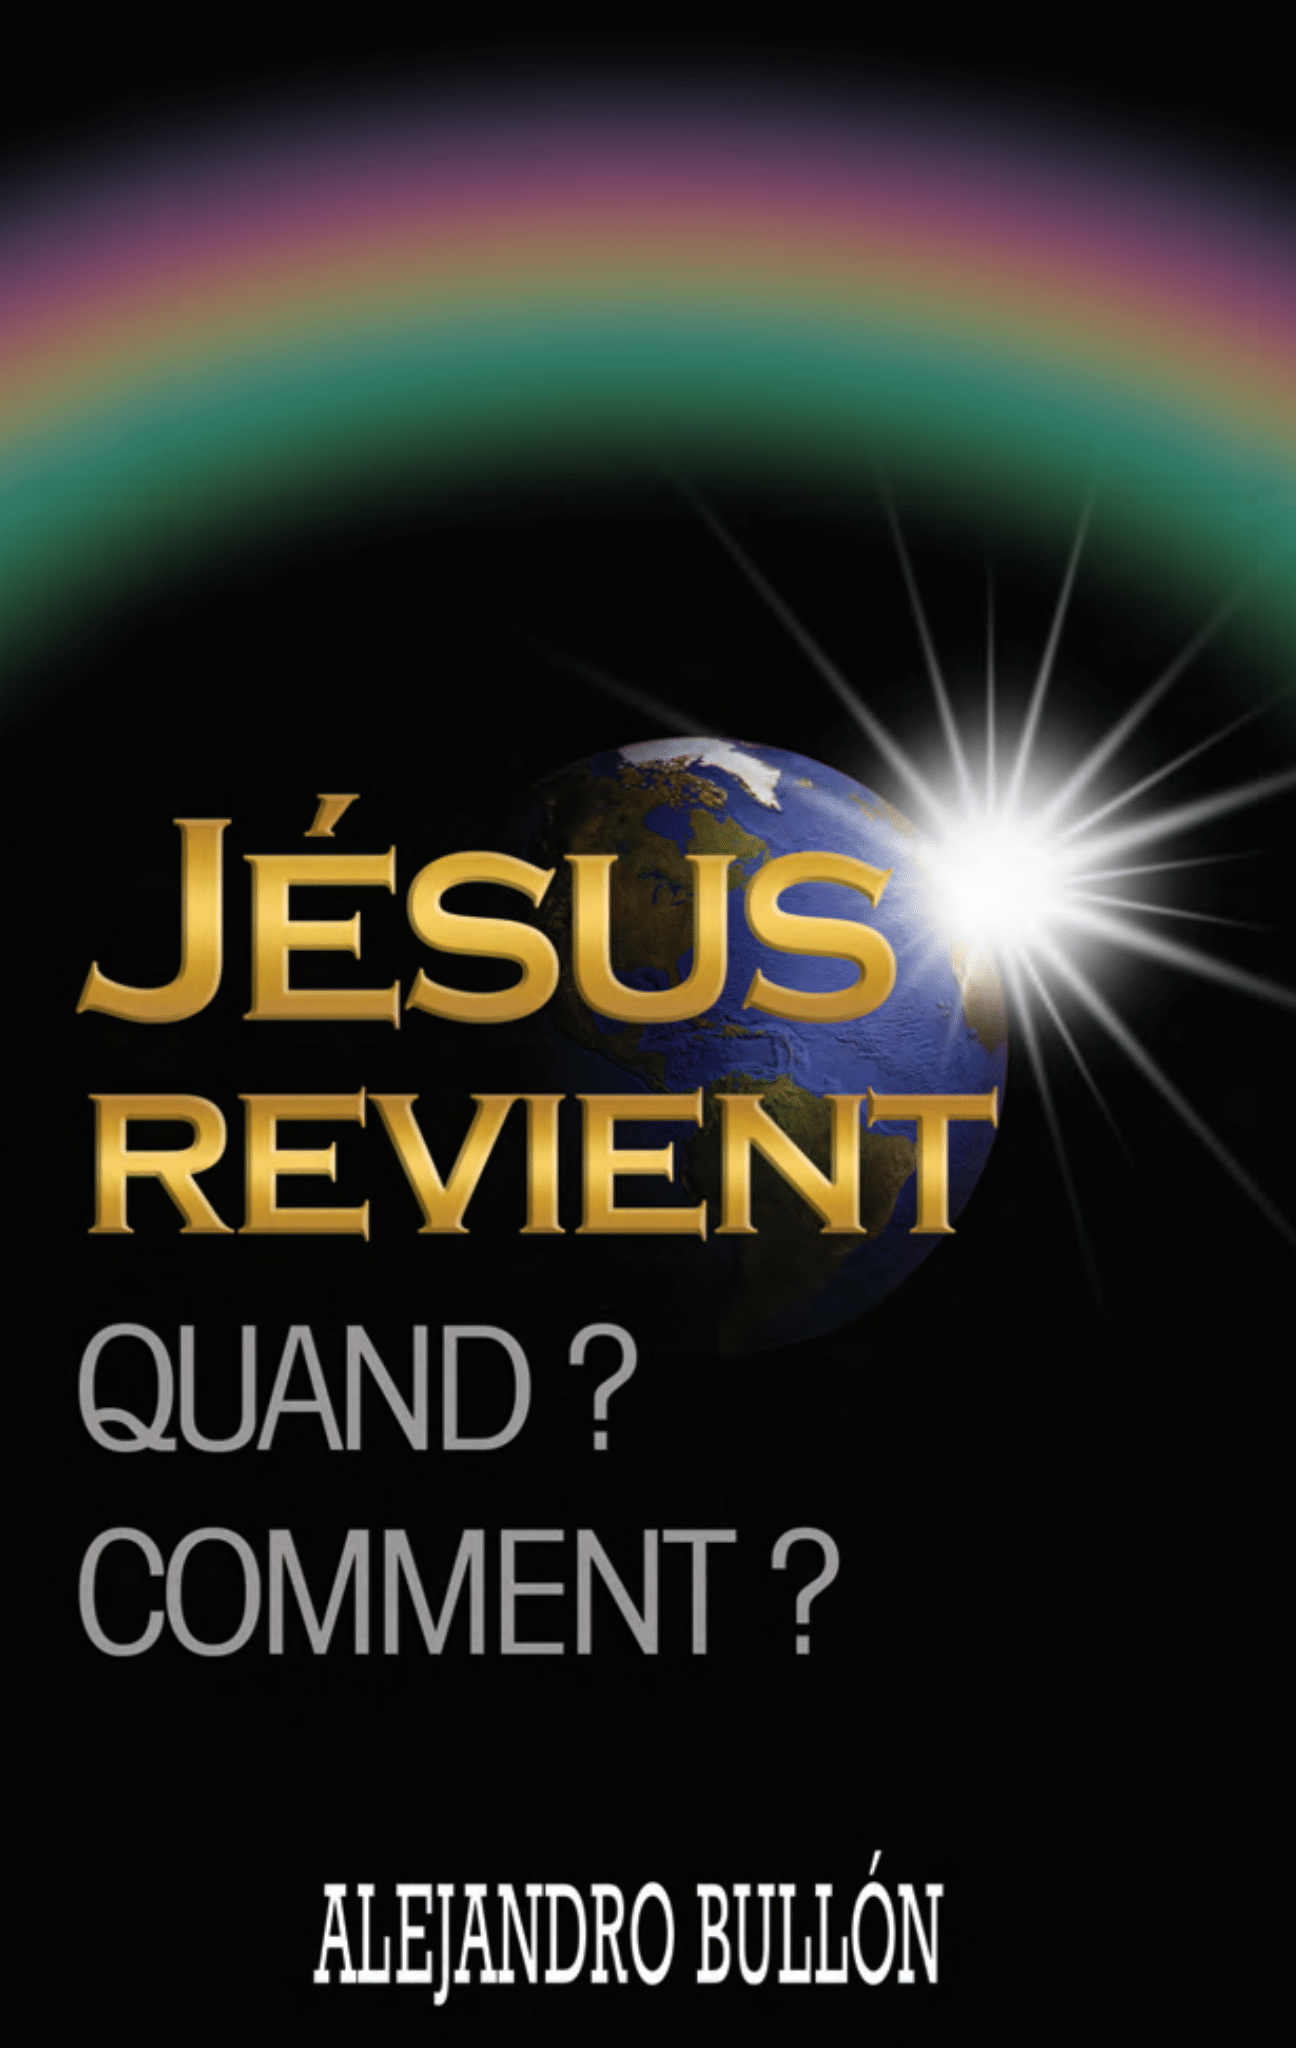 JESUS REVIENT: QUAND? COMMENT?